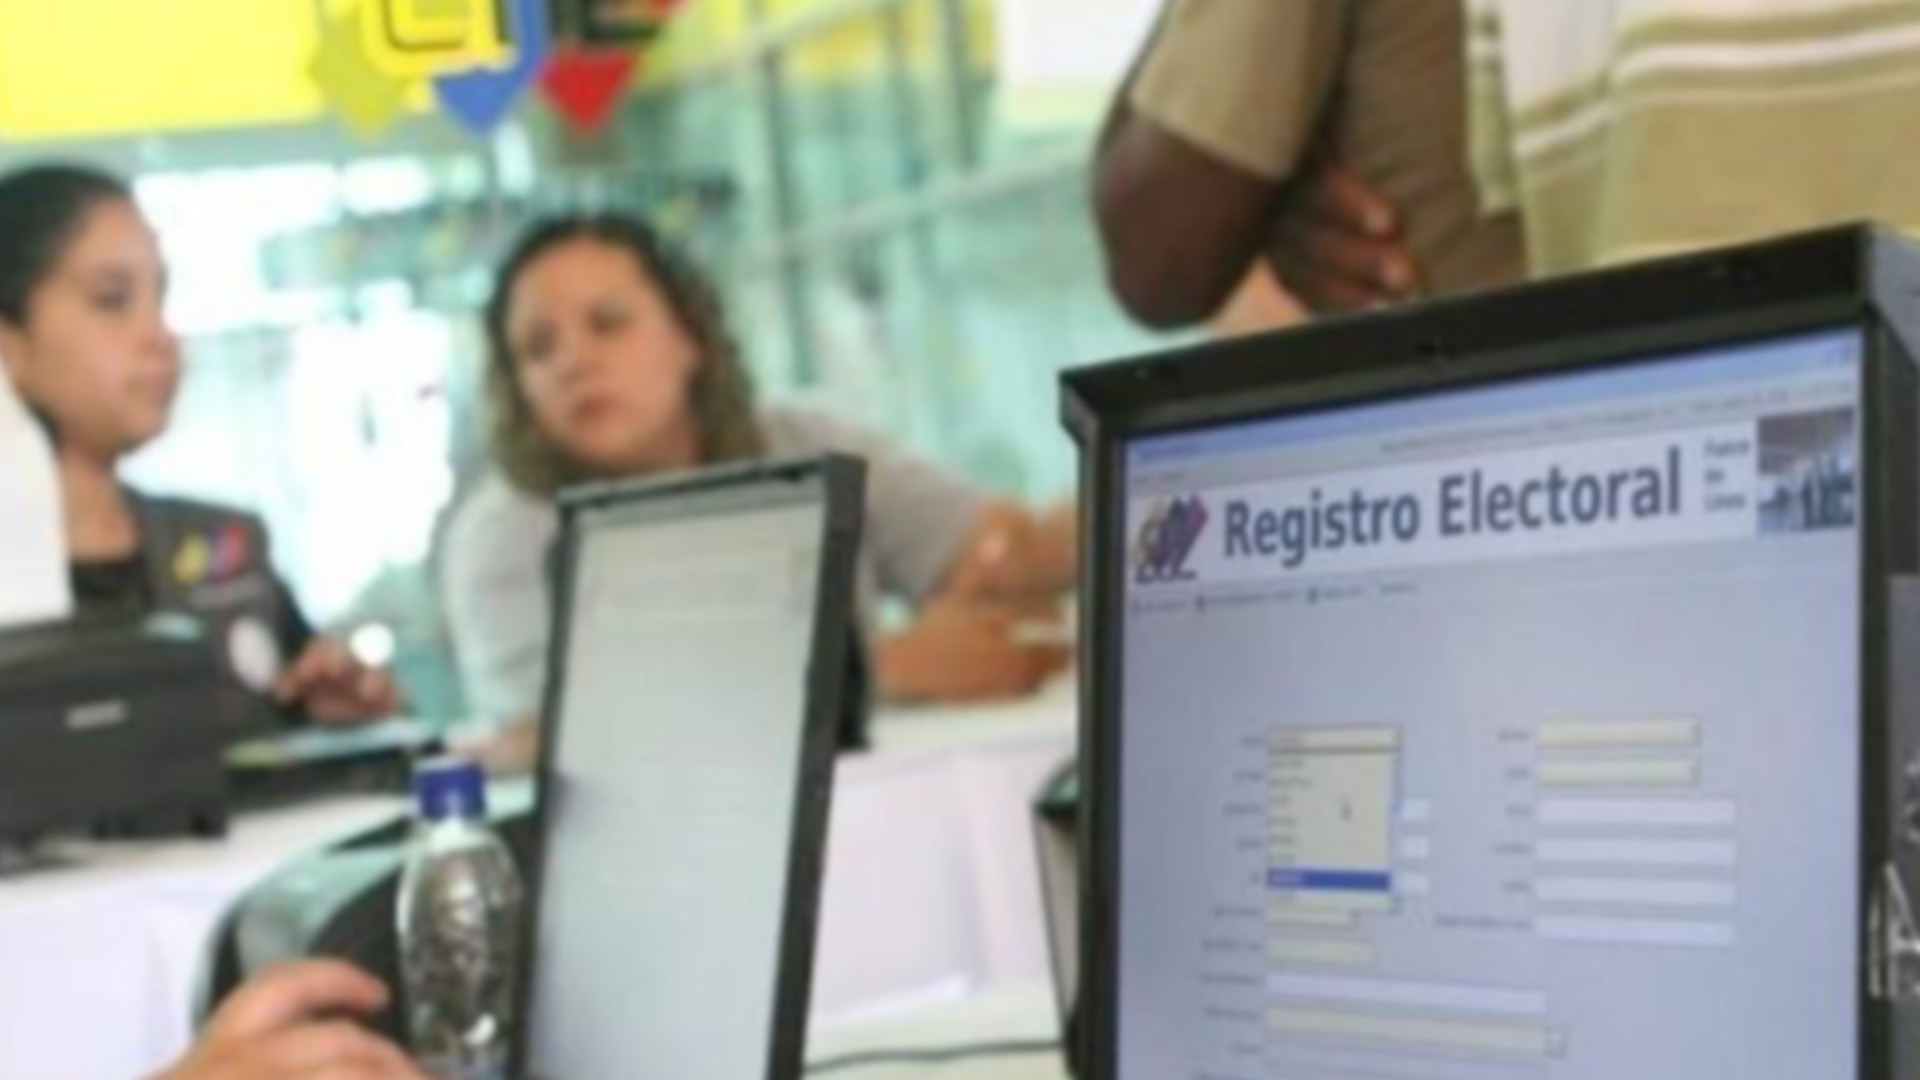 Incumple con sus deberes legales: Súmate alerta que CNE tiene siete meses sin publicar estatus del Registro Electoral